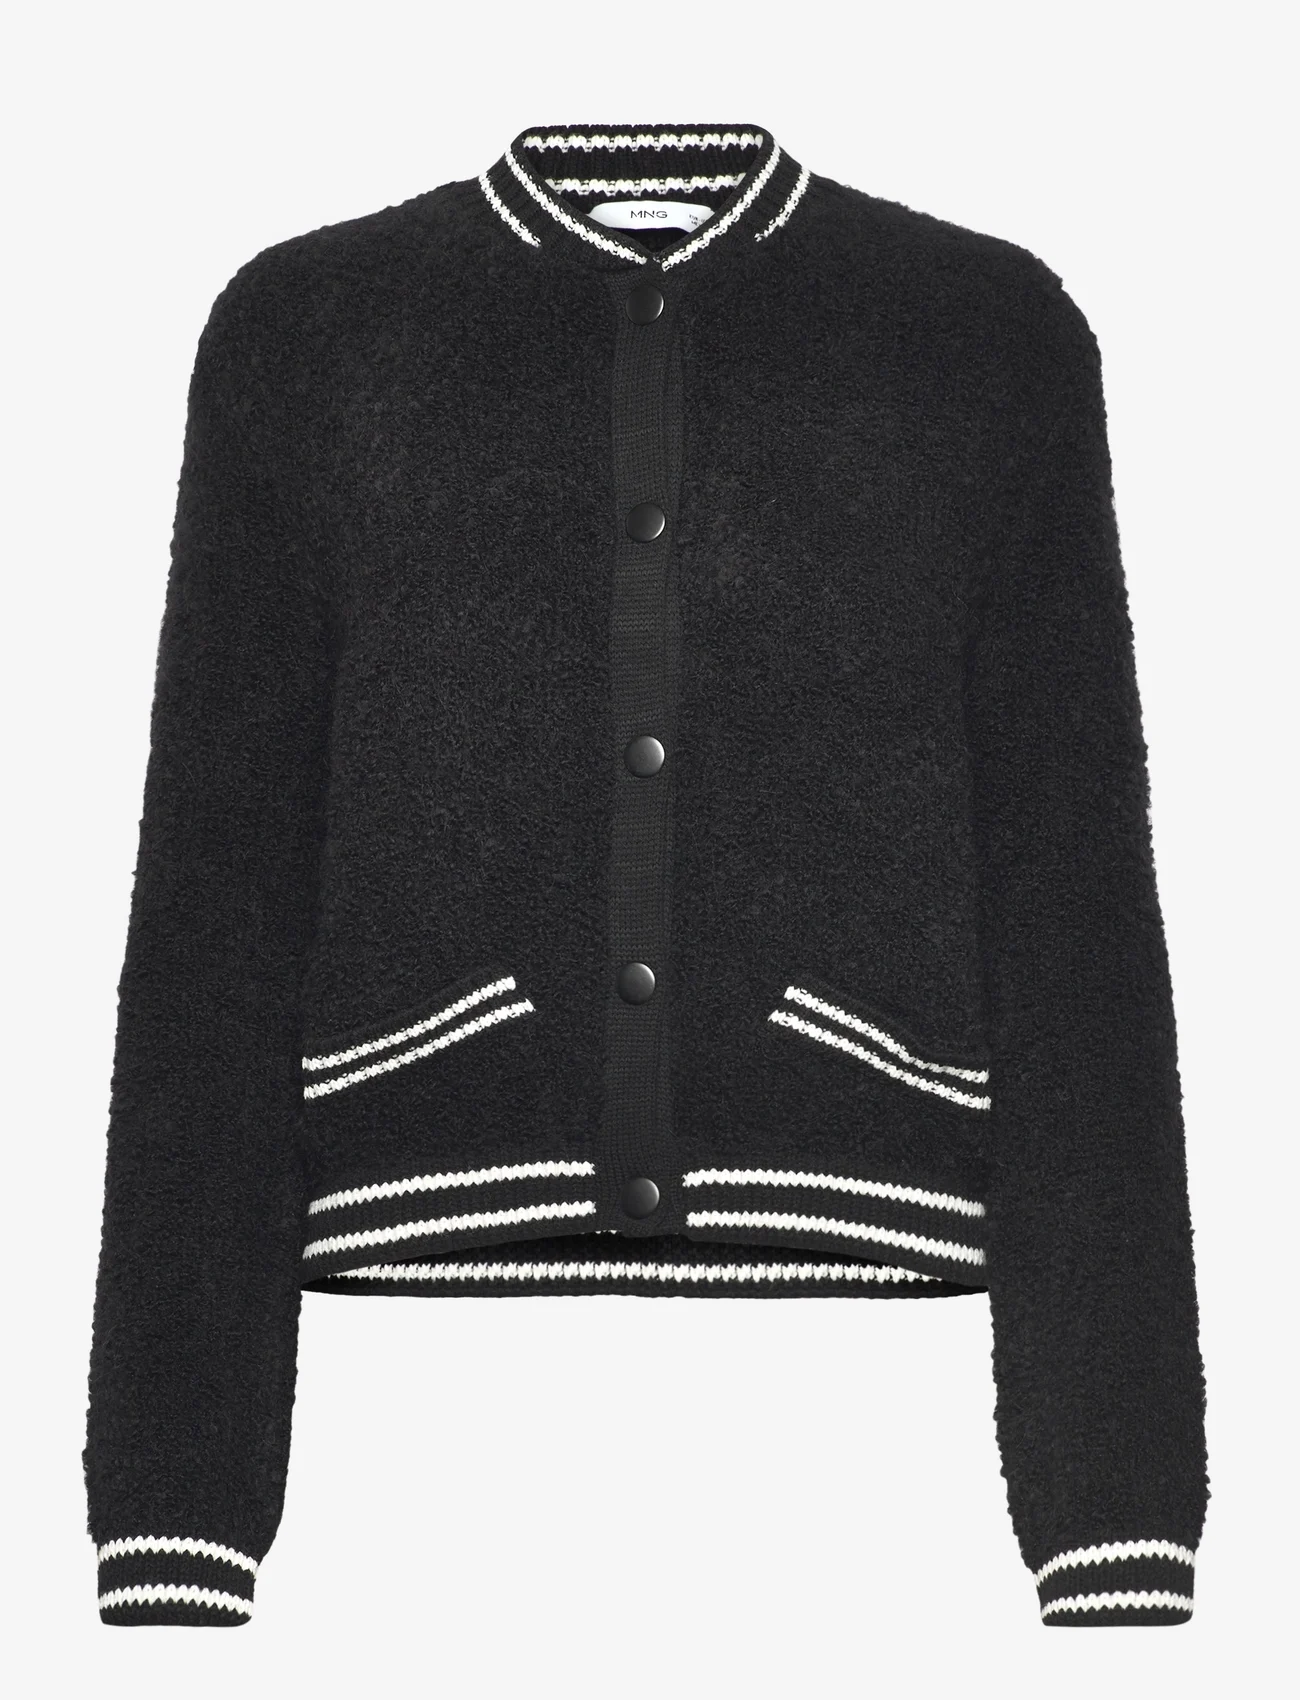 Mango - Knitted bomber jacket - forårsjakker - black - 0